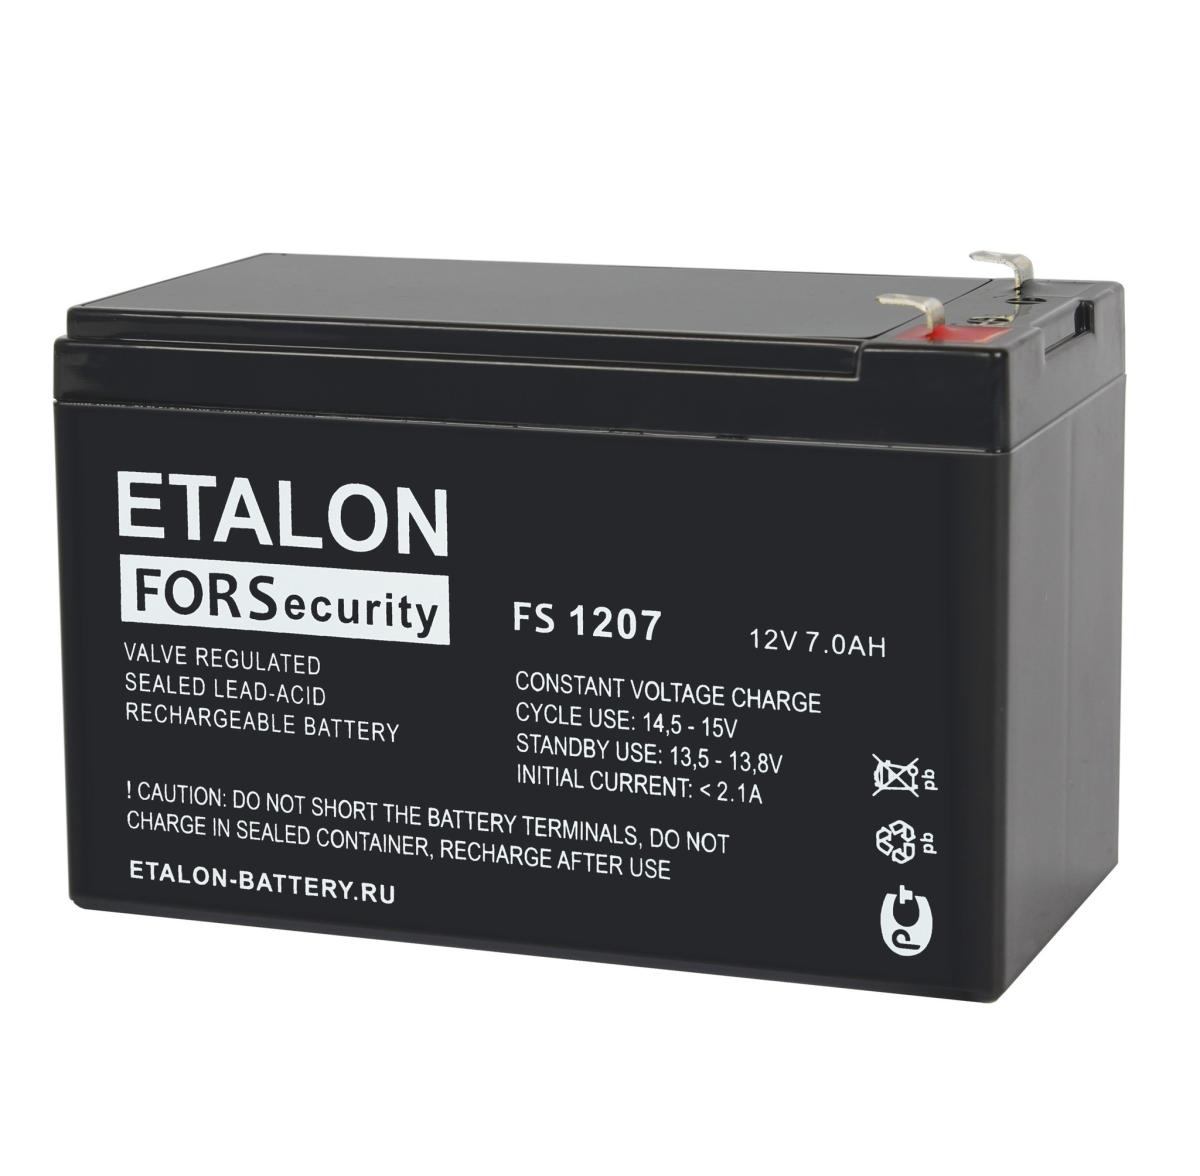 ETALON FORS 1207 Аккумулятор герметичный свинцово-кислотный